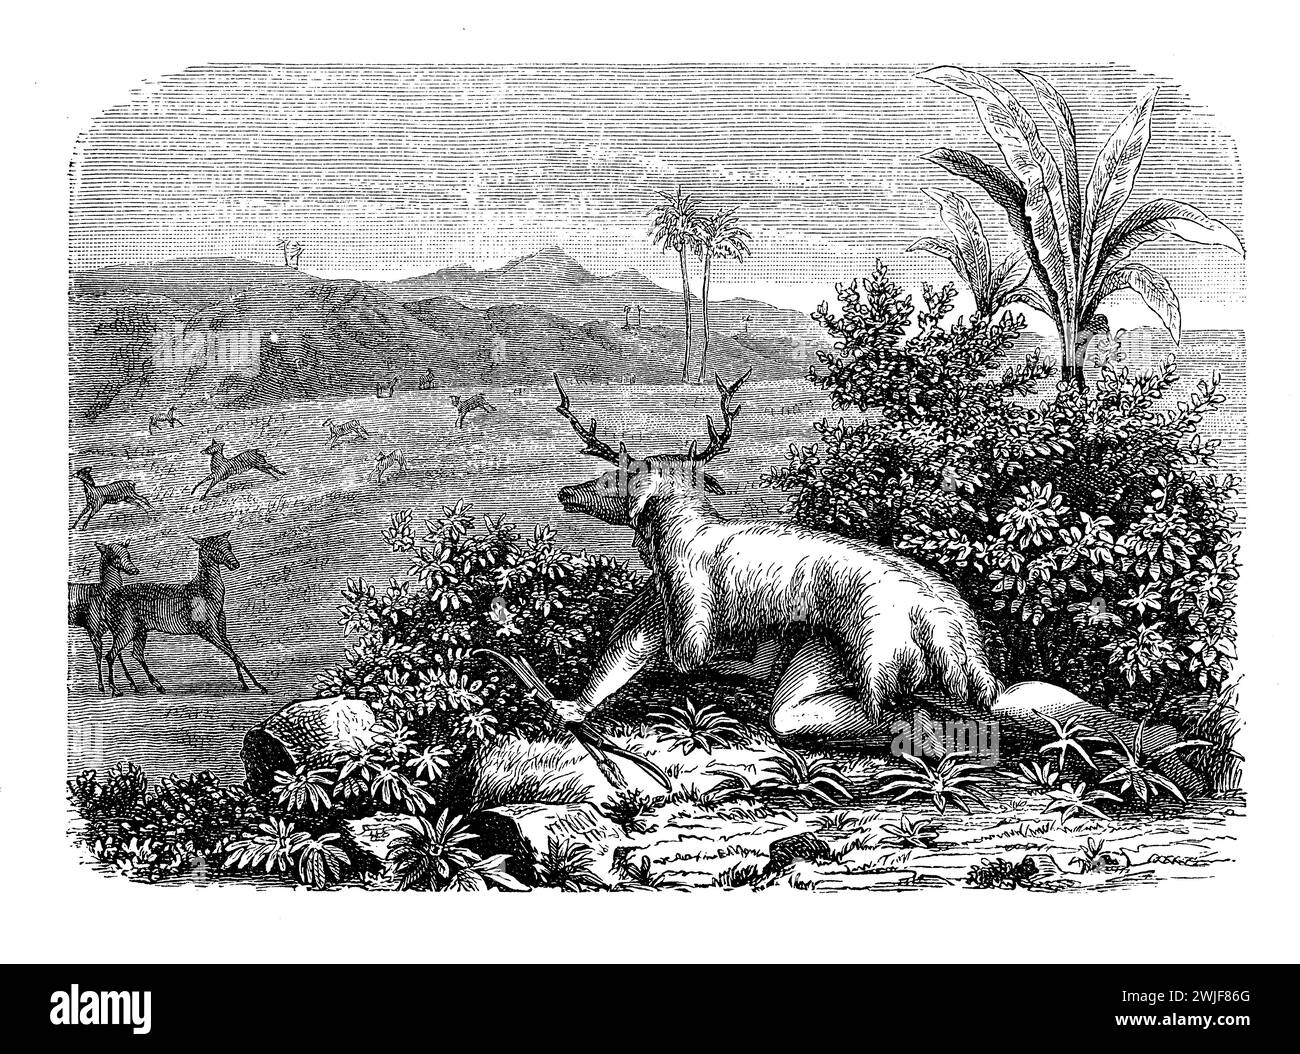 Chasseur avec un camouflage de cerf de tête et de peau d'animal chassant ses proies dans un paysage tropical, illustration du XIXe siècle Banque D'Images